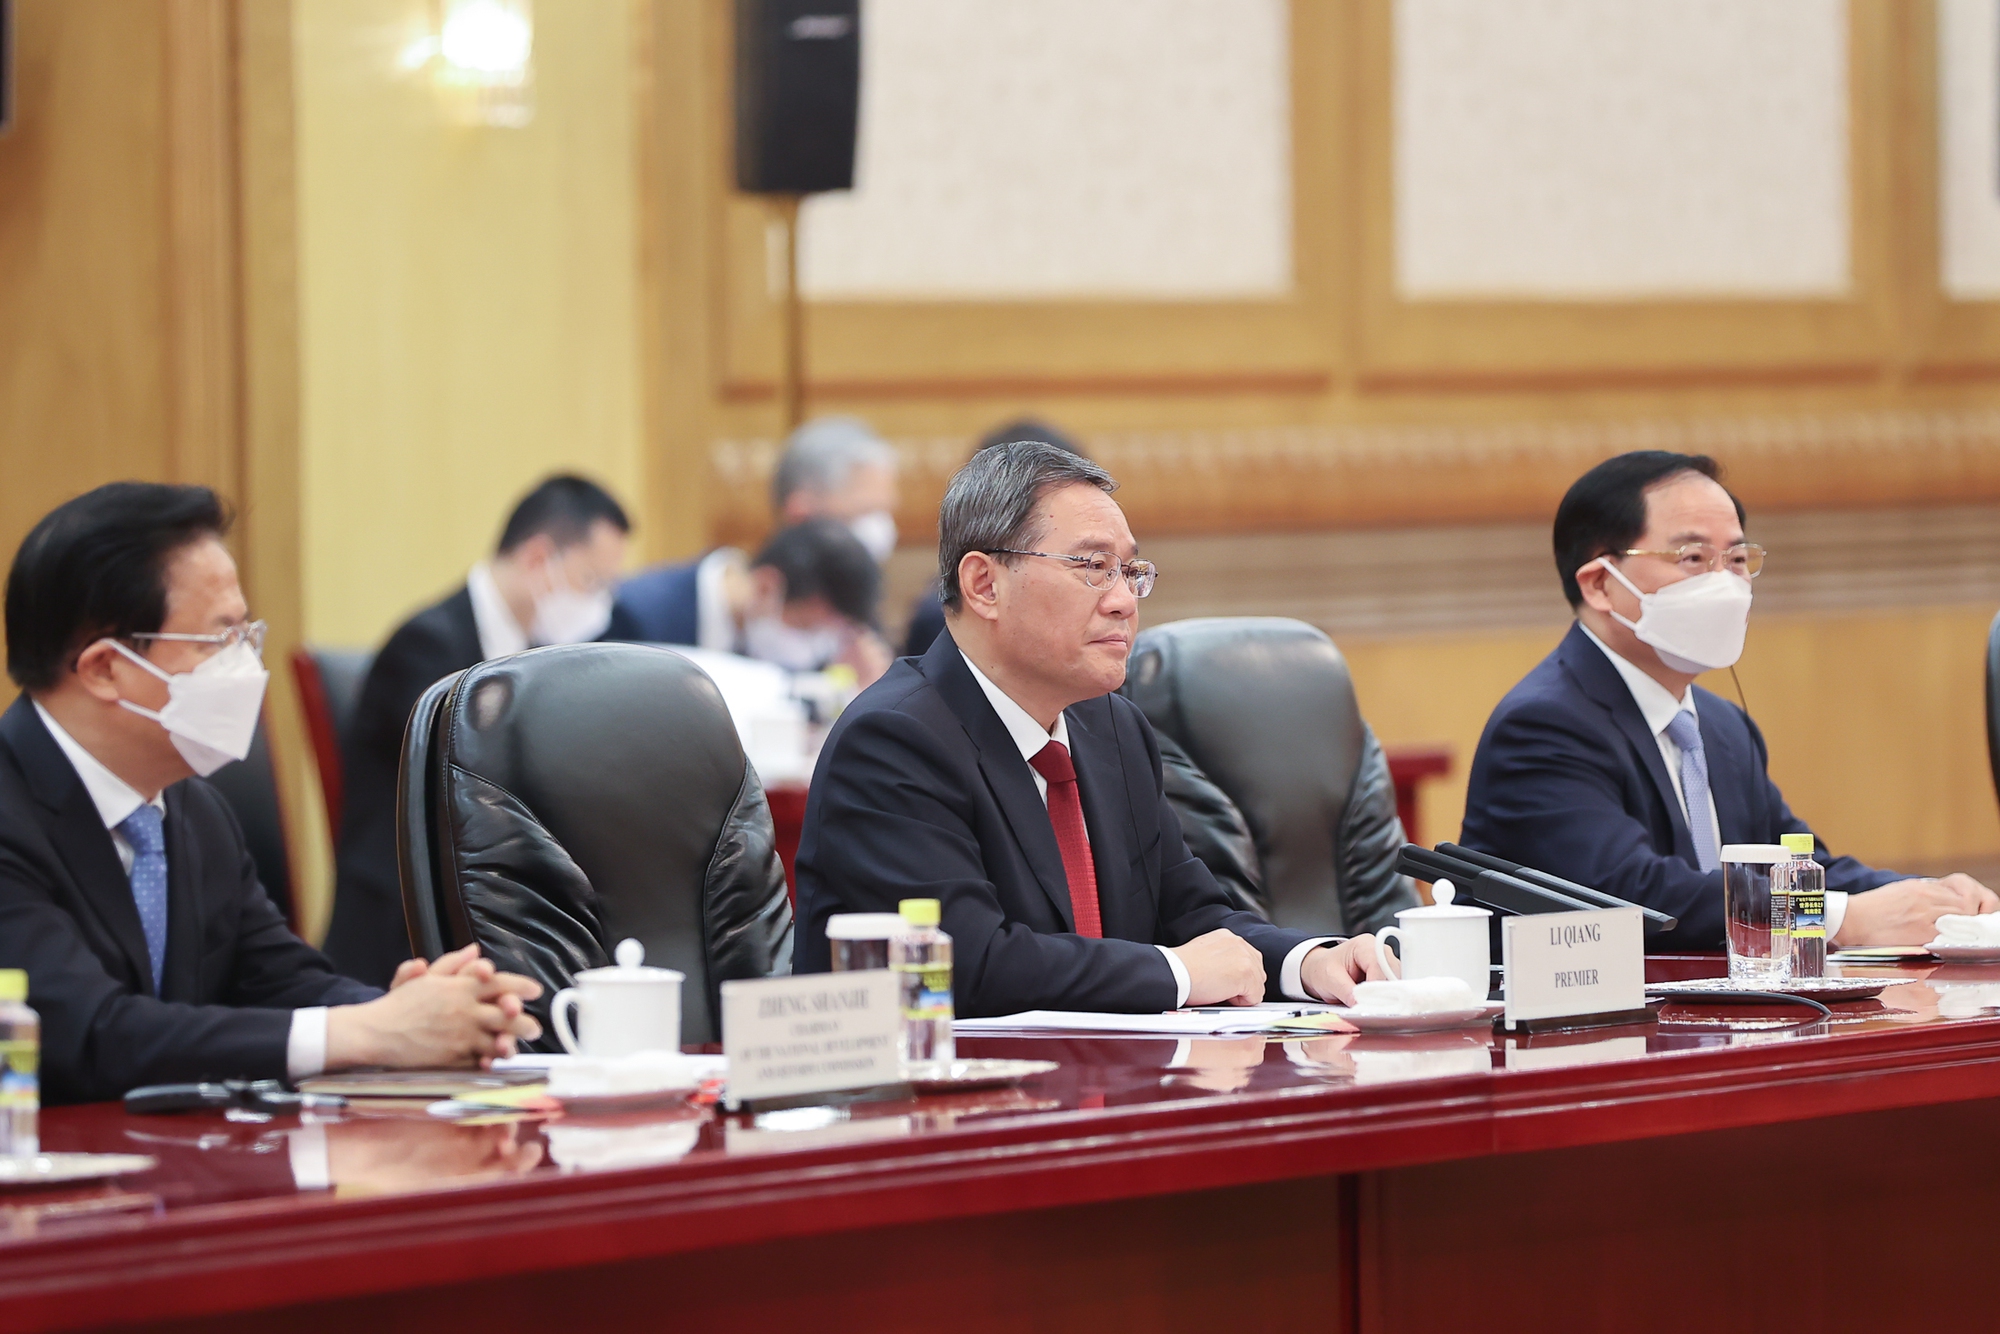 Chuyến thăm chính thức Trung Quốc đầu tiên của Thủ tướng Chính phủ Phạm Minh Chín là hoạt động gặp gỡ trực tiếp đầu tiên giữa lãnh đạo chủ chốt hai nước sau khi Trung Quốc kiện toàn các chức danh lãnh đạo Nhà nước khóa mới - Ảnh: VGP/Nhật Bắc